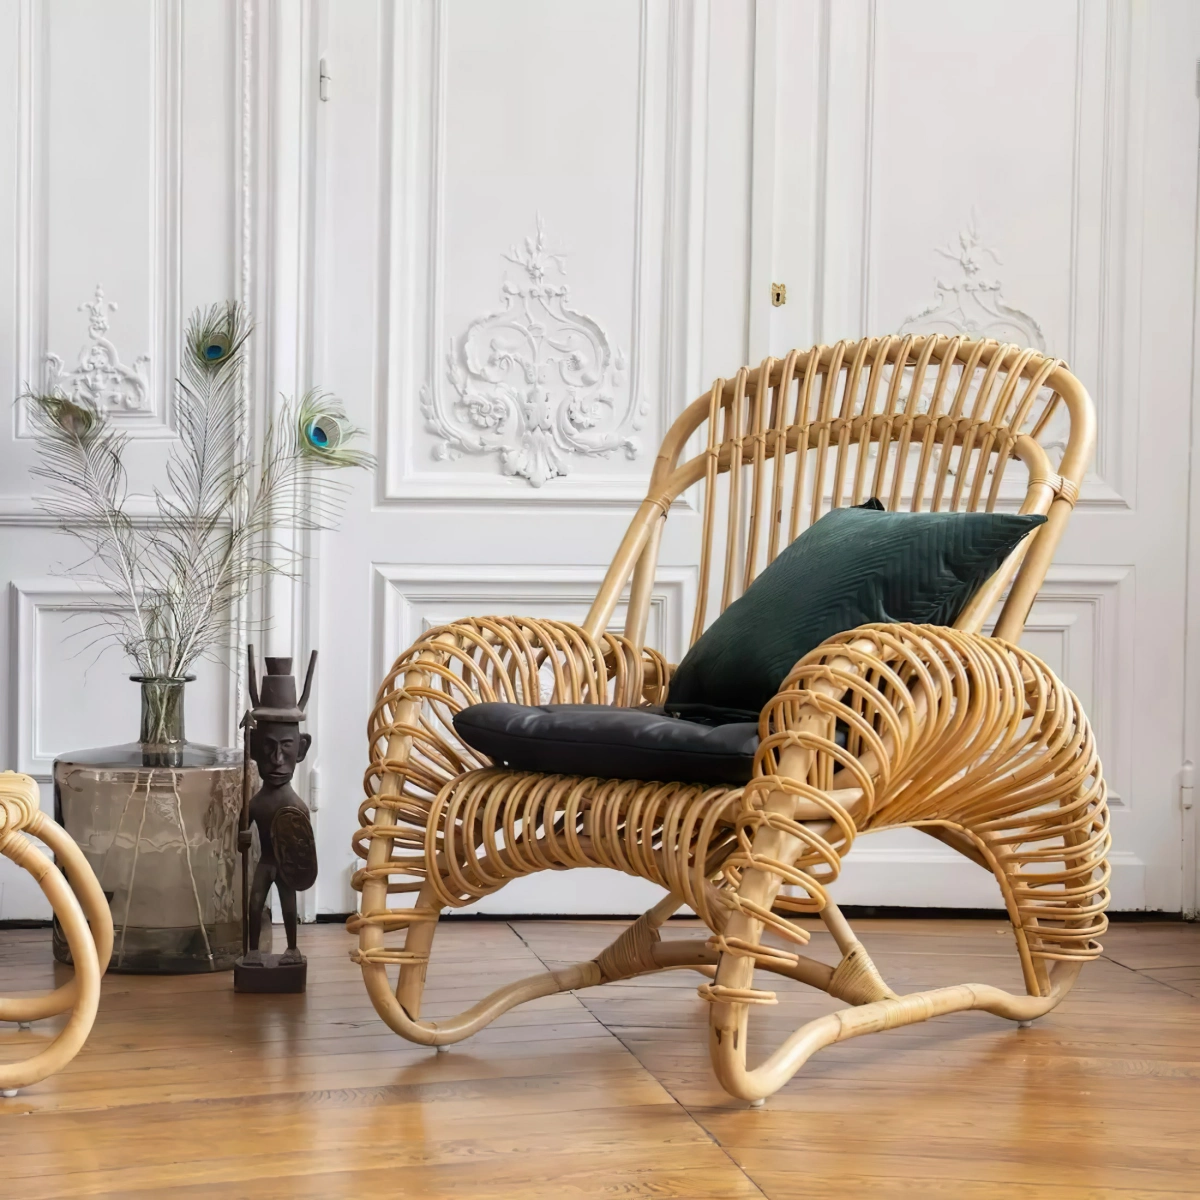 meuble fibre vegetale fauteuil en rotin mur blanc parquet bois